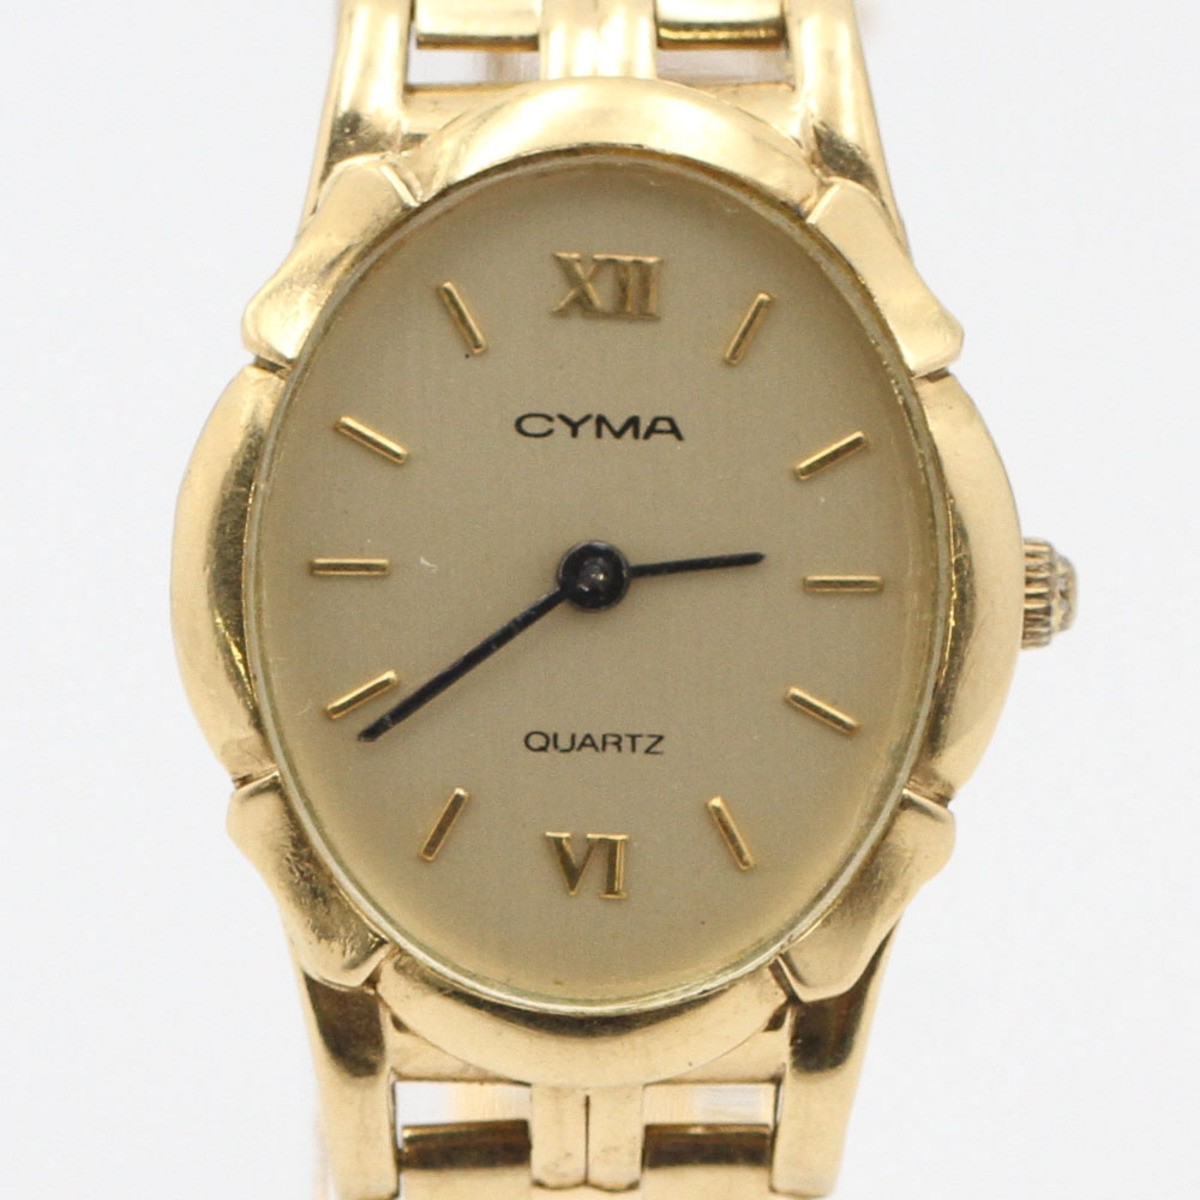 Comprar Reloj CYMA QUARTZ de E351673